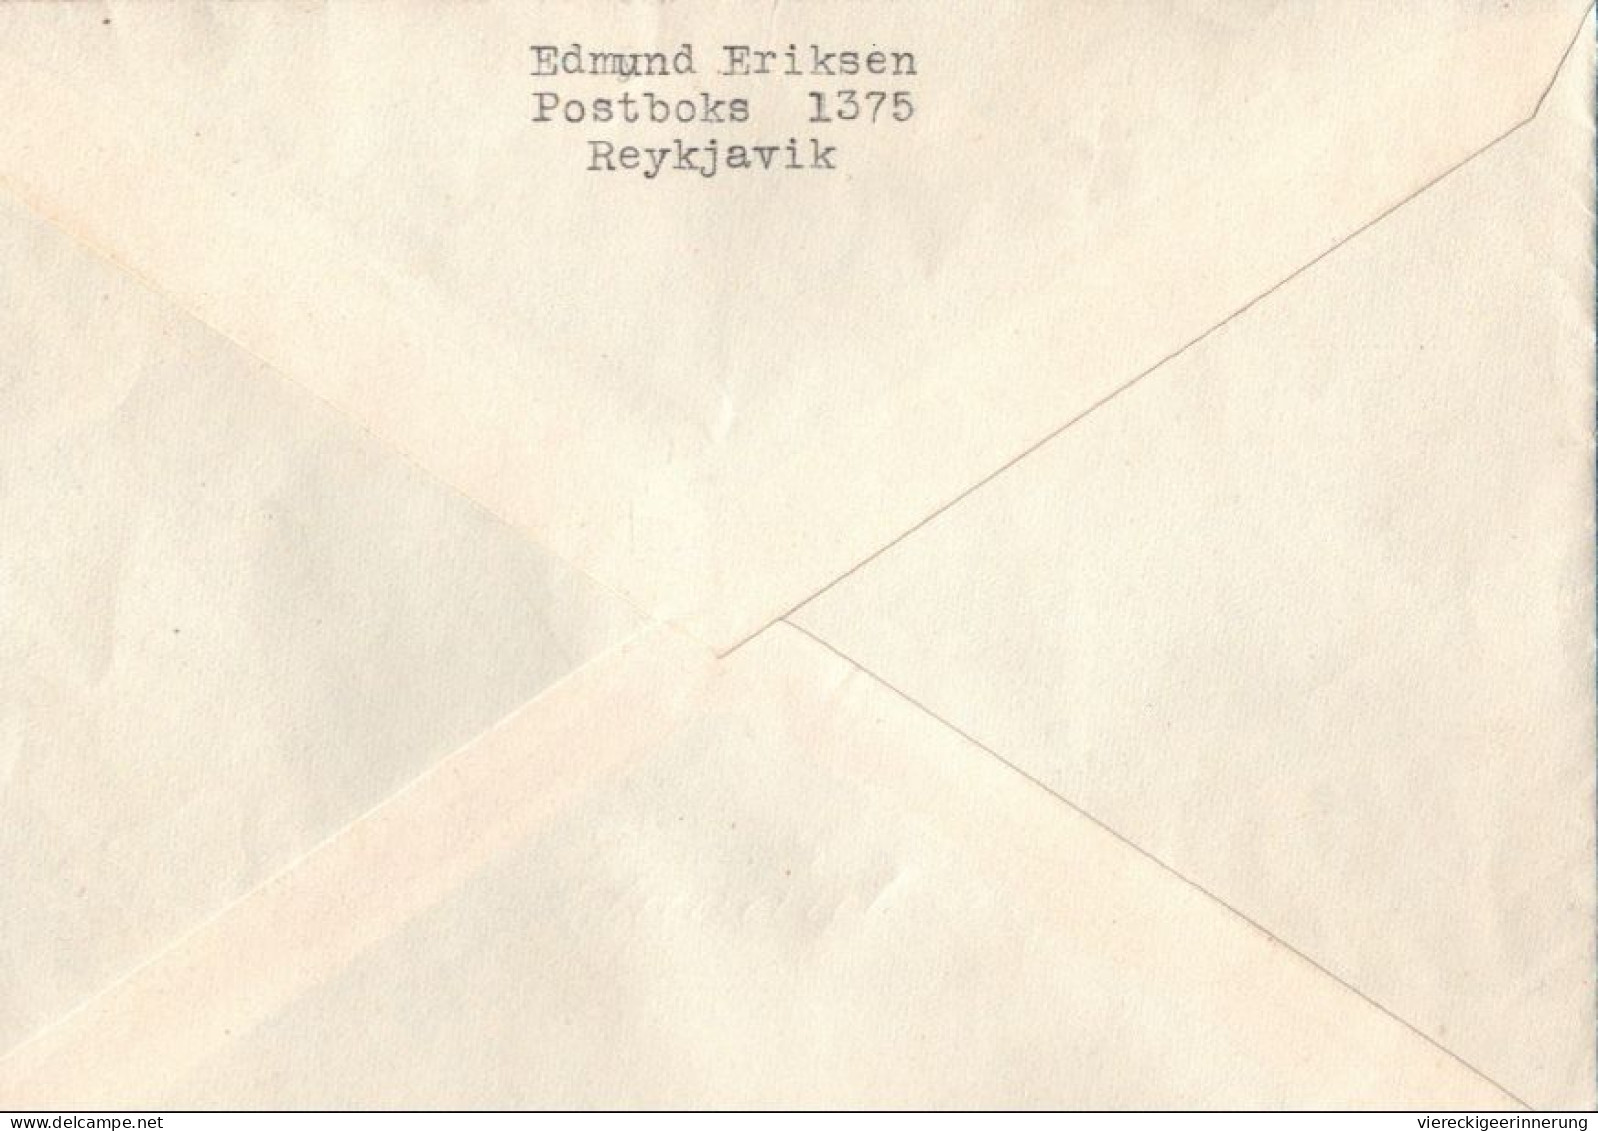 ! 2 Briefe + 29 R-Zettel aus Island, iceland, Reykjavik, Einschreibzettel, Reco Label